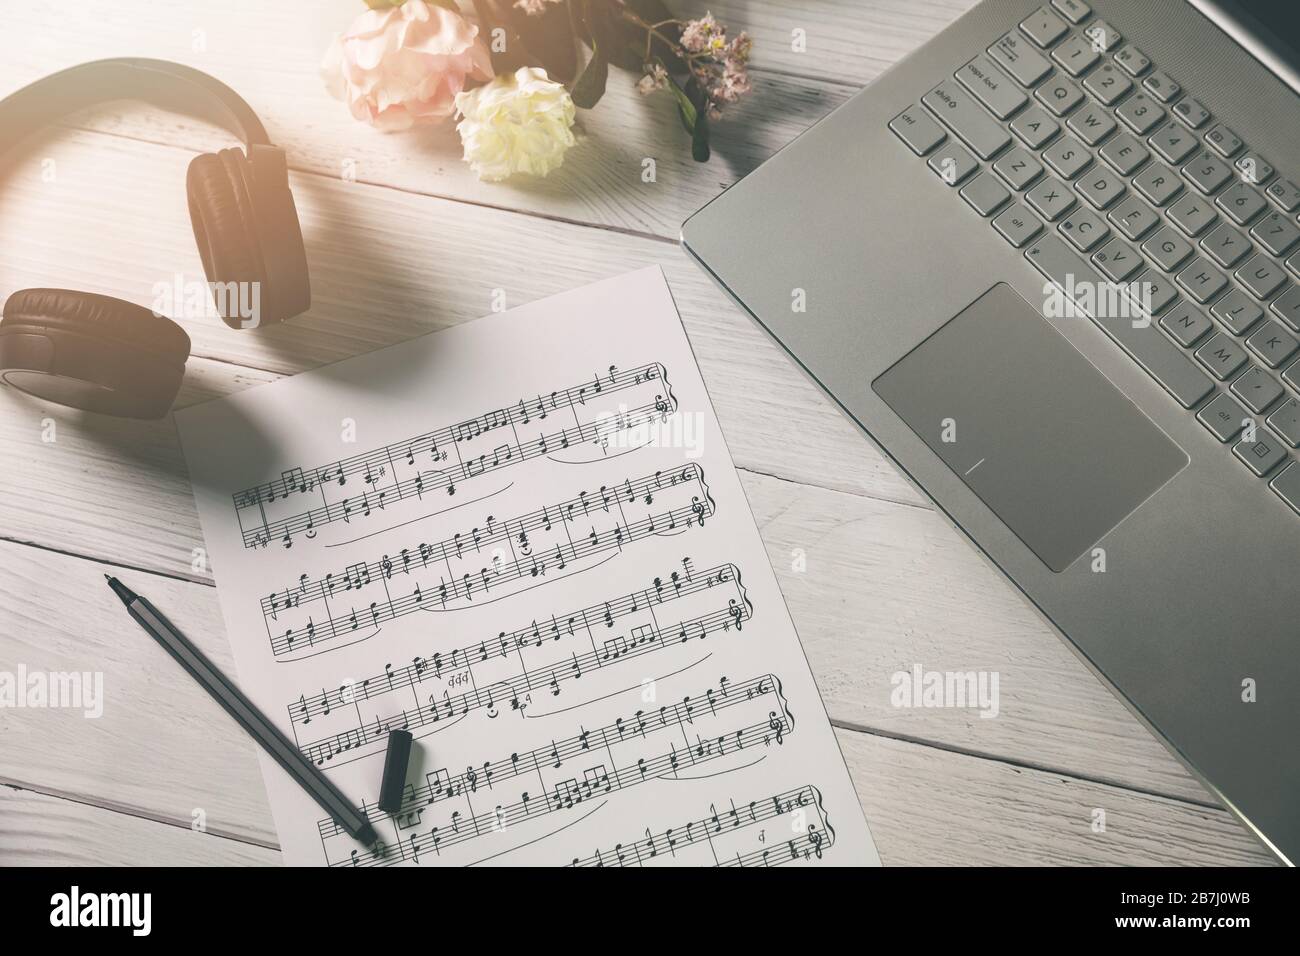 Musik und Bildung komponieren - Papierblatt mit Musiknotizen, Laptop und Kopfhörer auf dem Schreibtisch des Künstlers Stockfoto